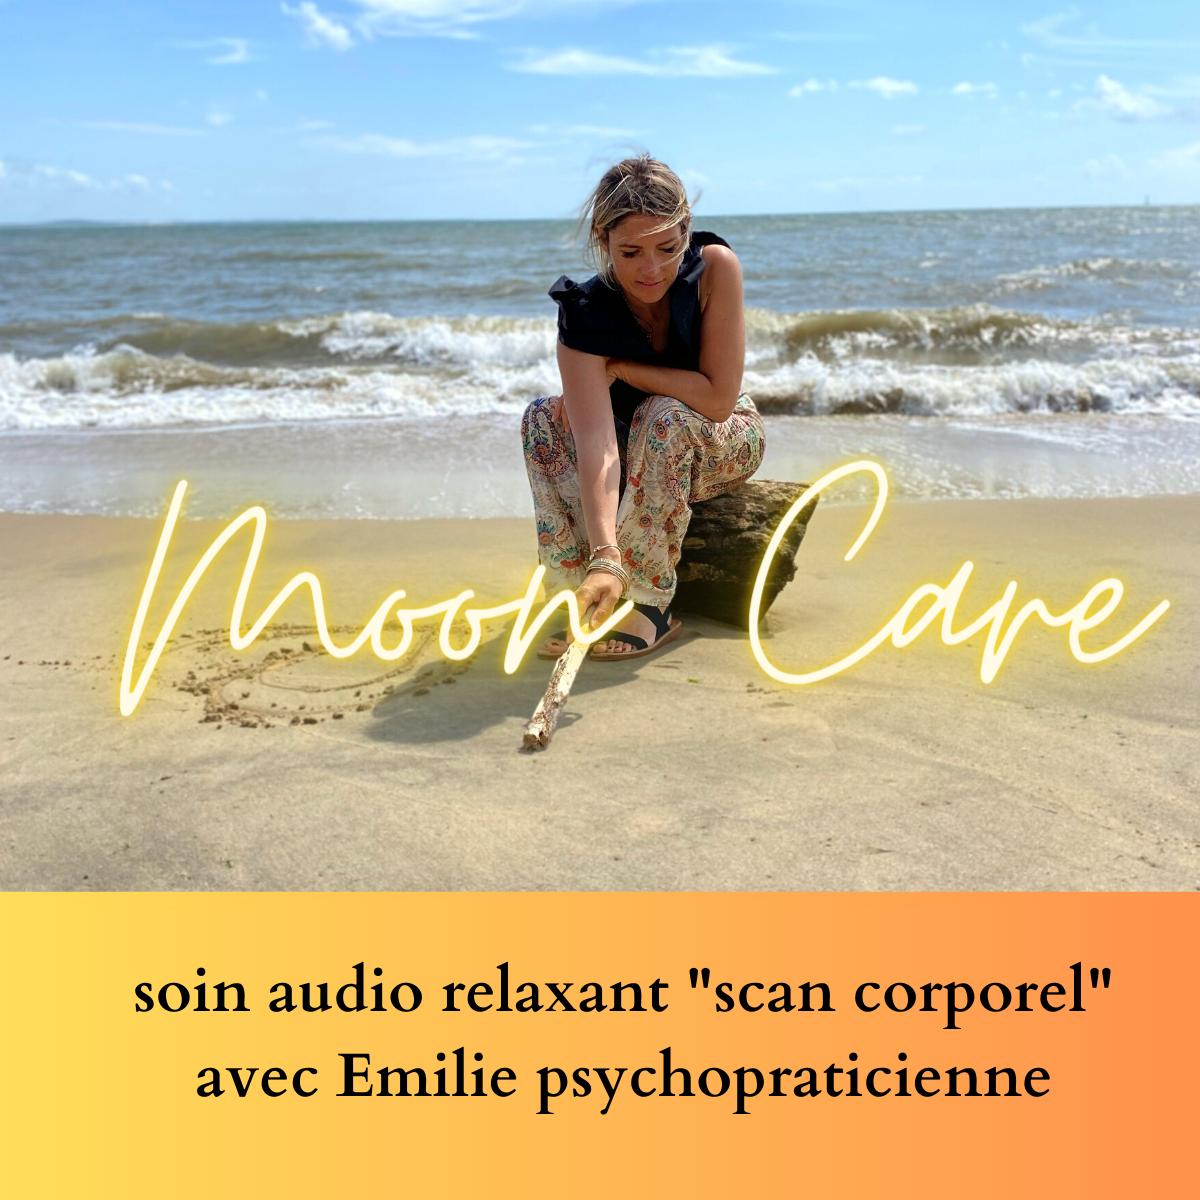 Soin audio relaxant "scan corporel" par Emilie